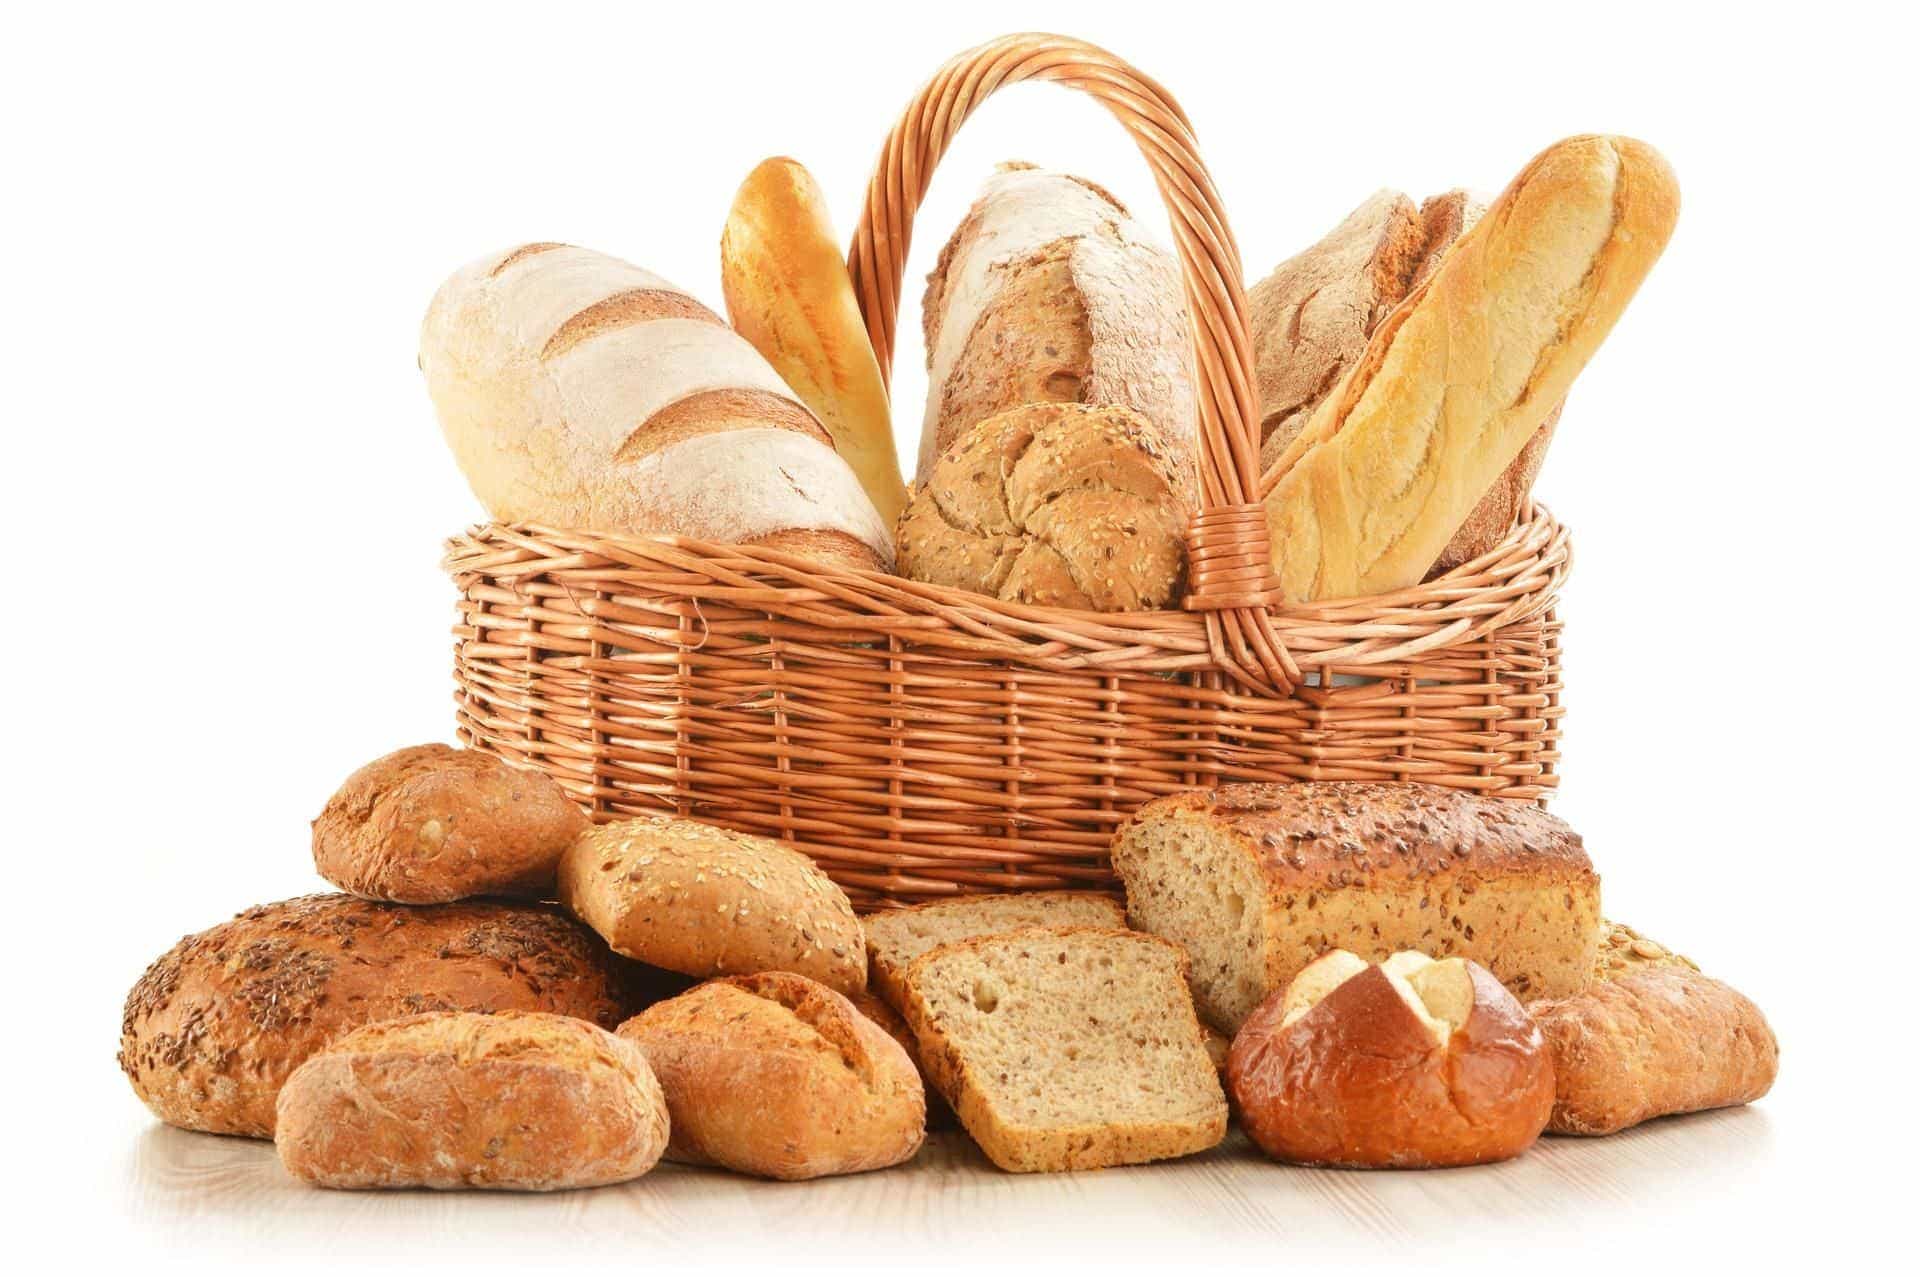 bread dream meaning, dream about bread, bread dream interpretation, seeing in a dream bread